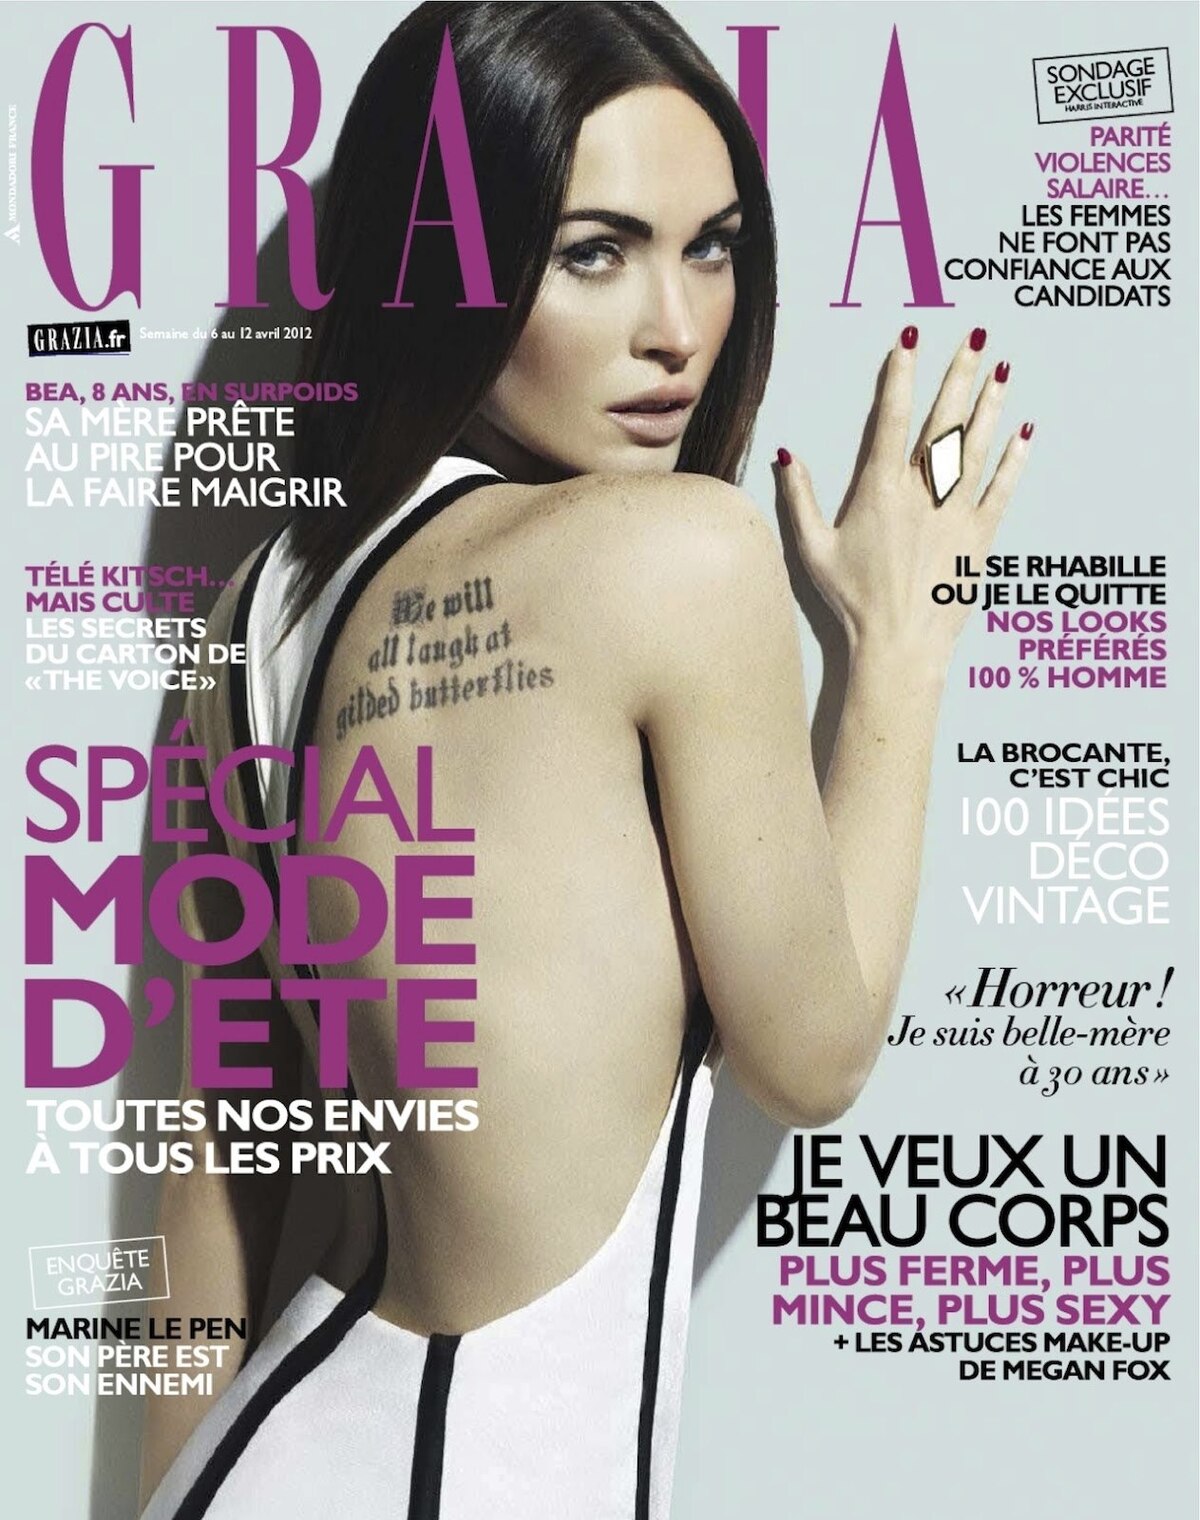 Меган Фокс в журнале Grazia Франция. Апрель 2012